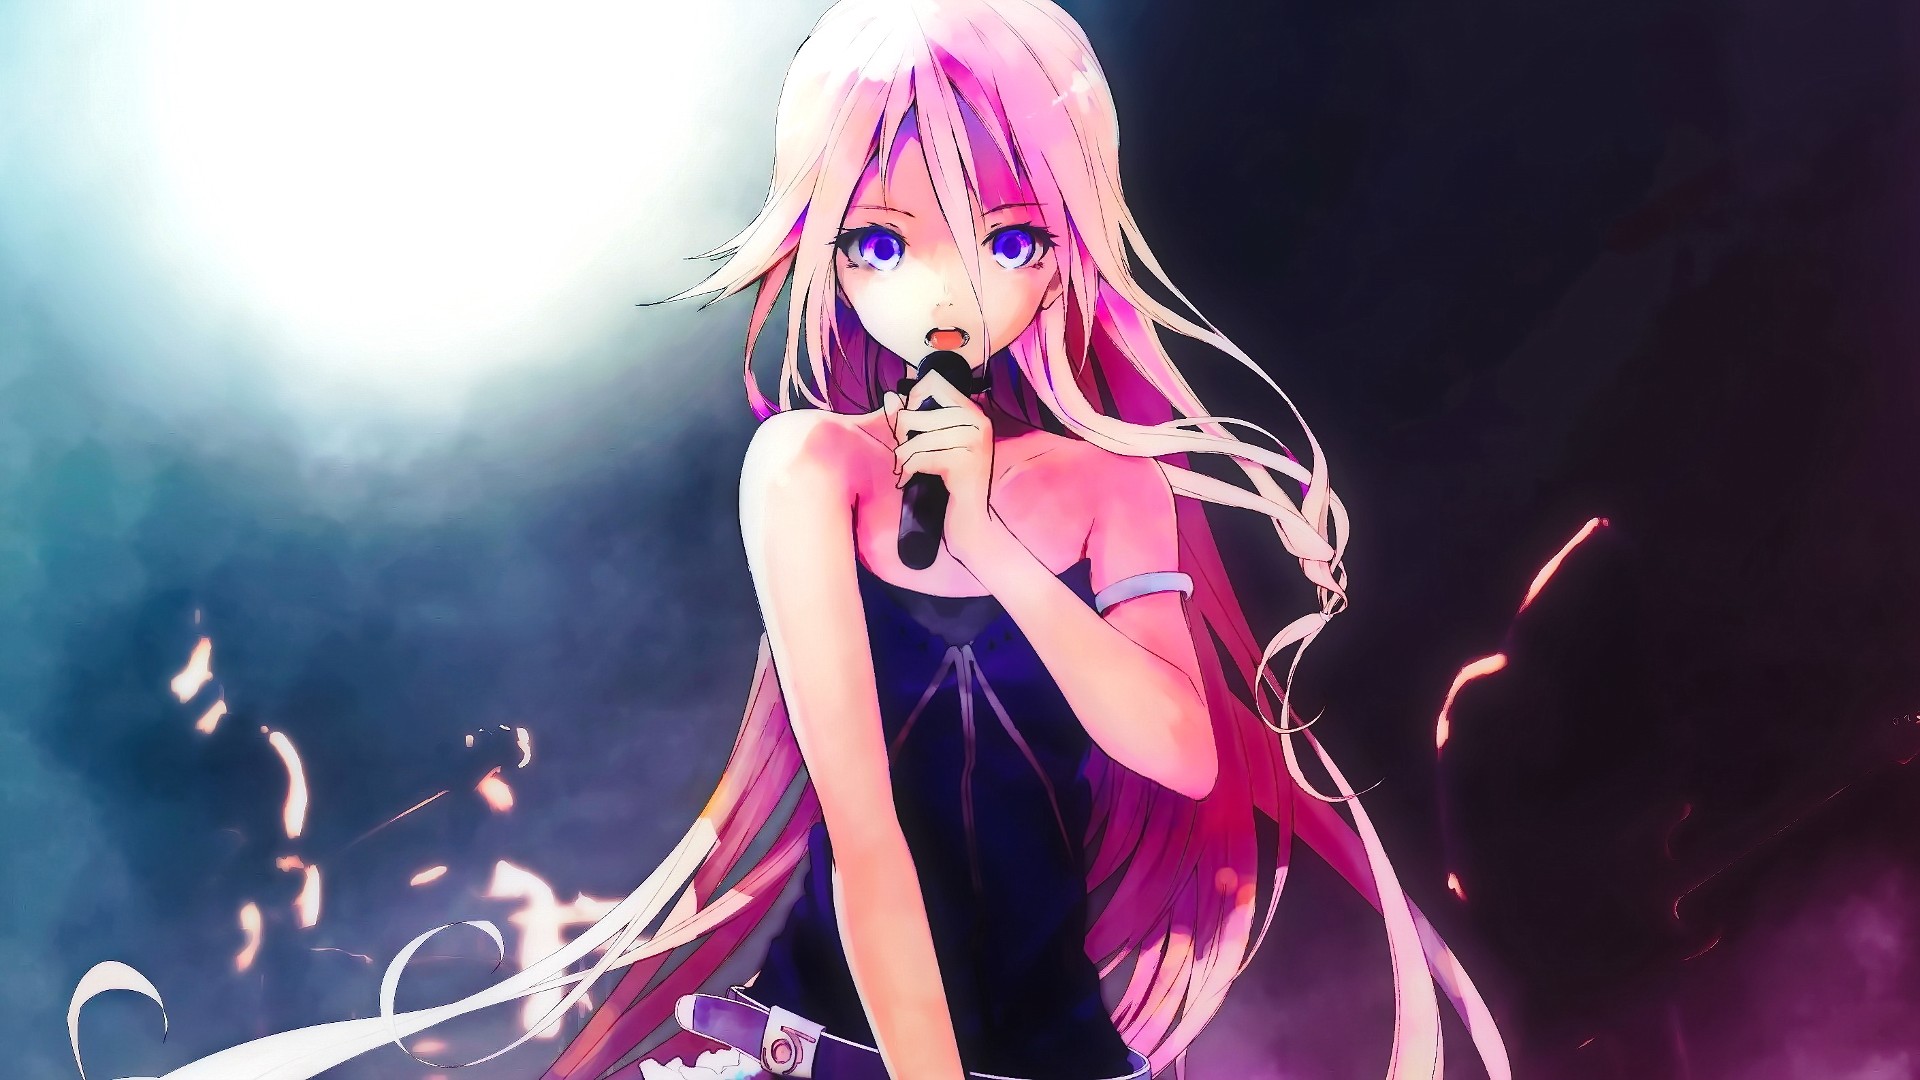 Anime Girl Pink Hair Singing - 1920x1080 Wallpaper 